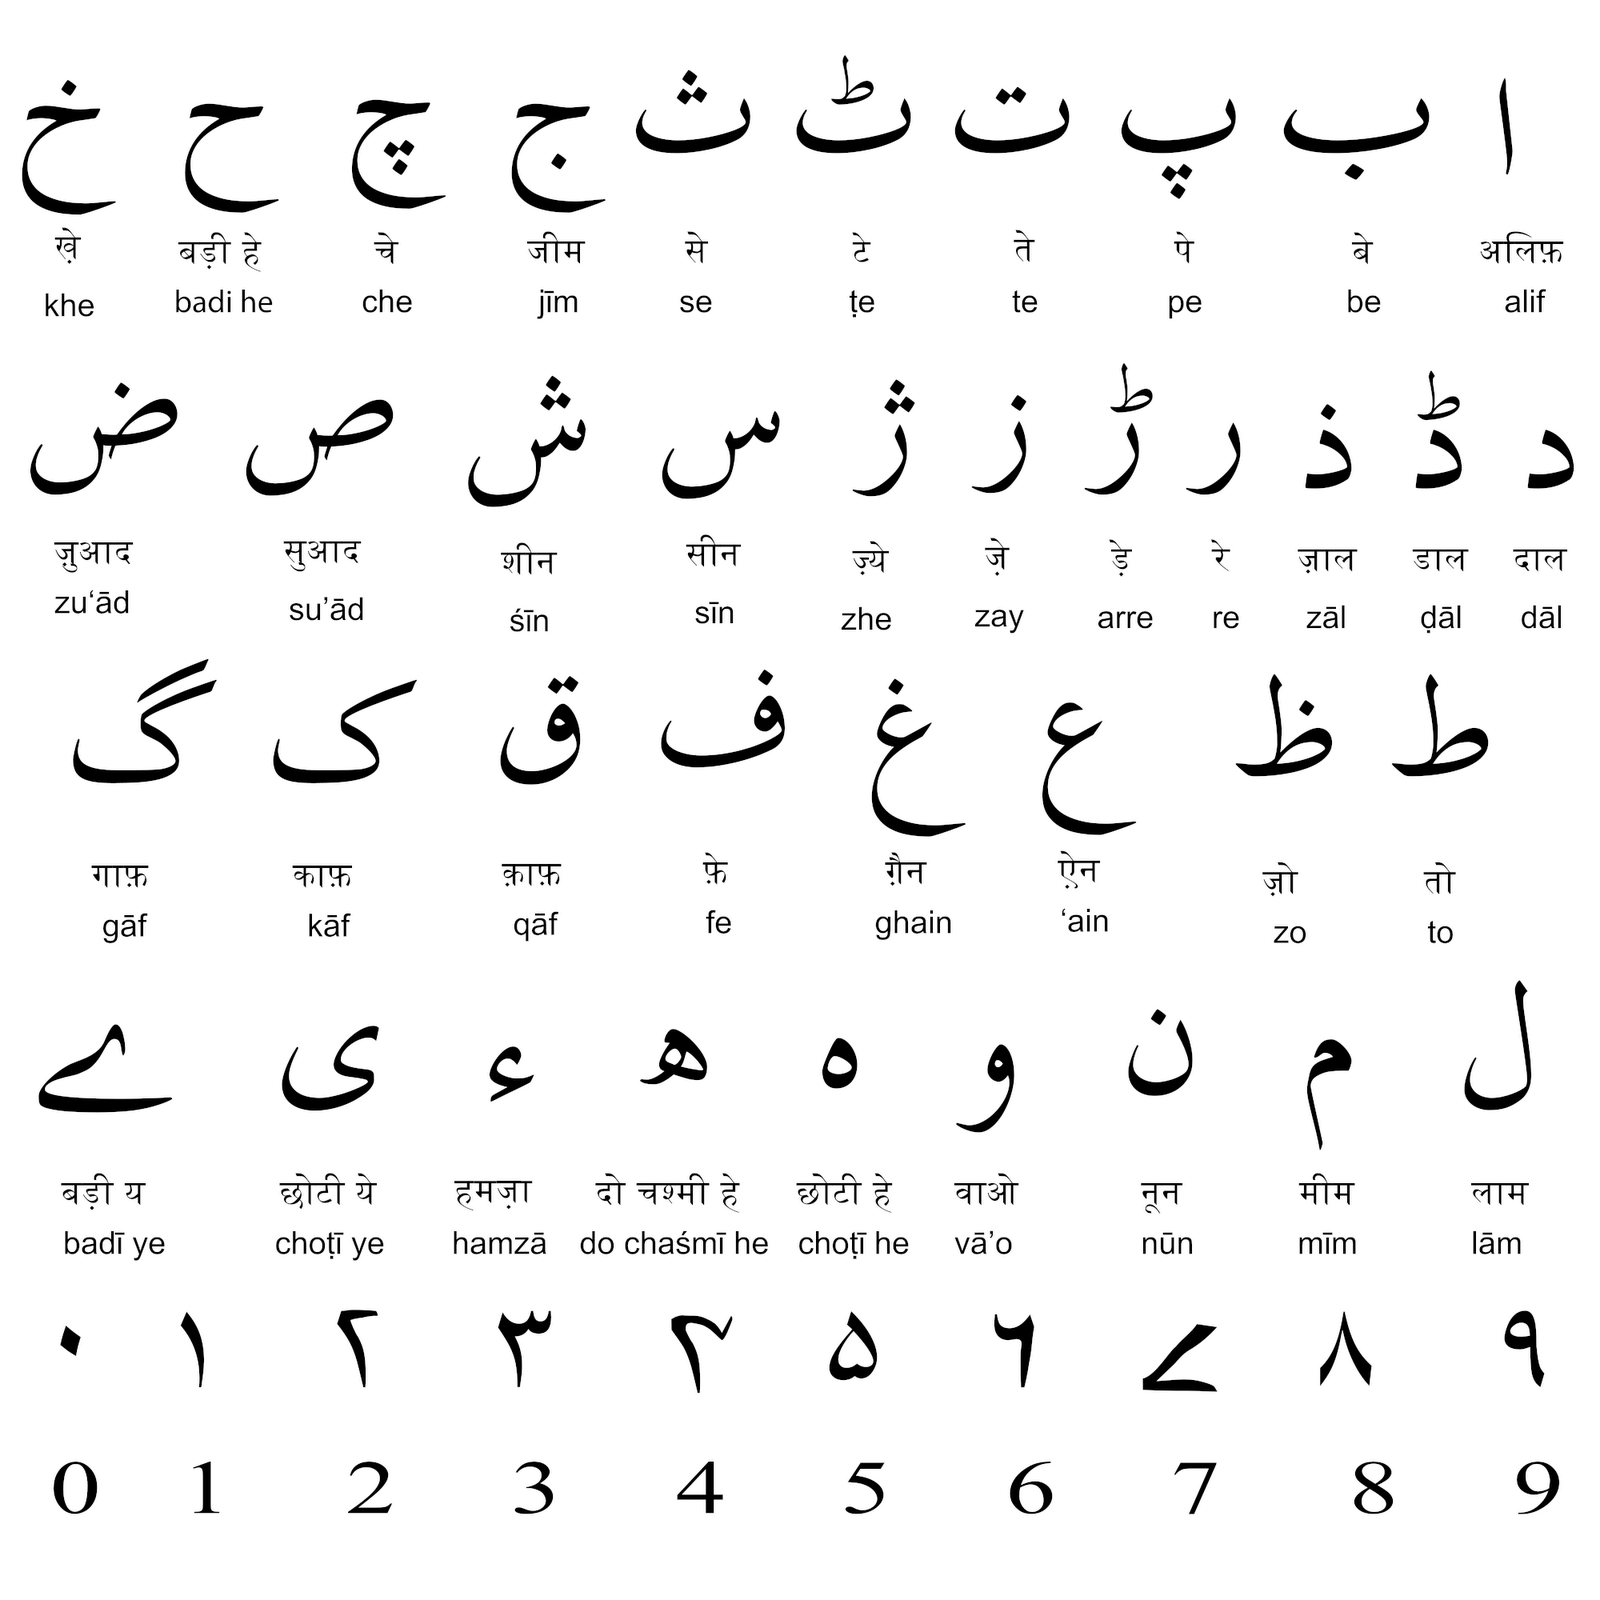 Urdu Alphabet in English